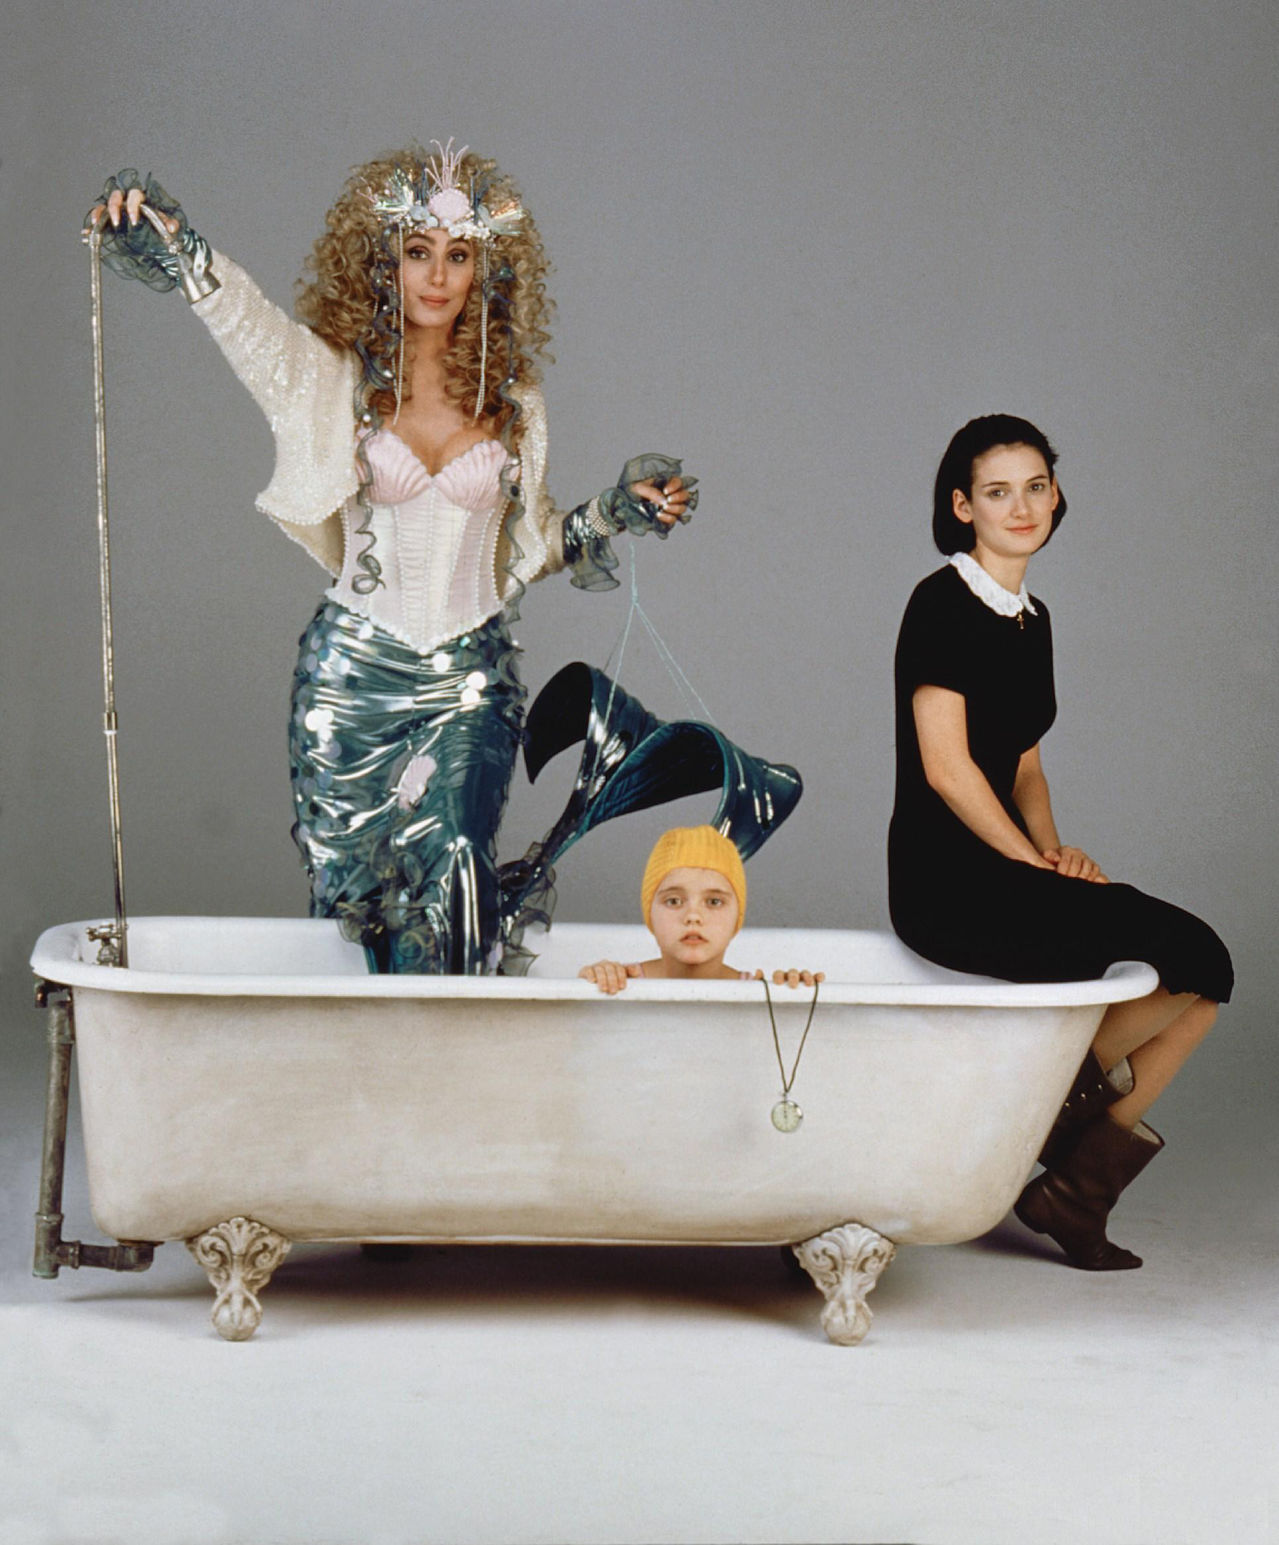 “Mermaids” (1990): Recordando ese clásico de culto con Cher, Winona Ryder y Christina Ricci